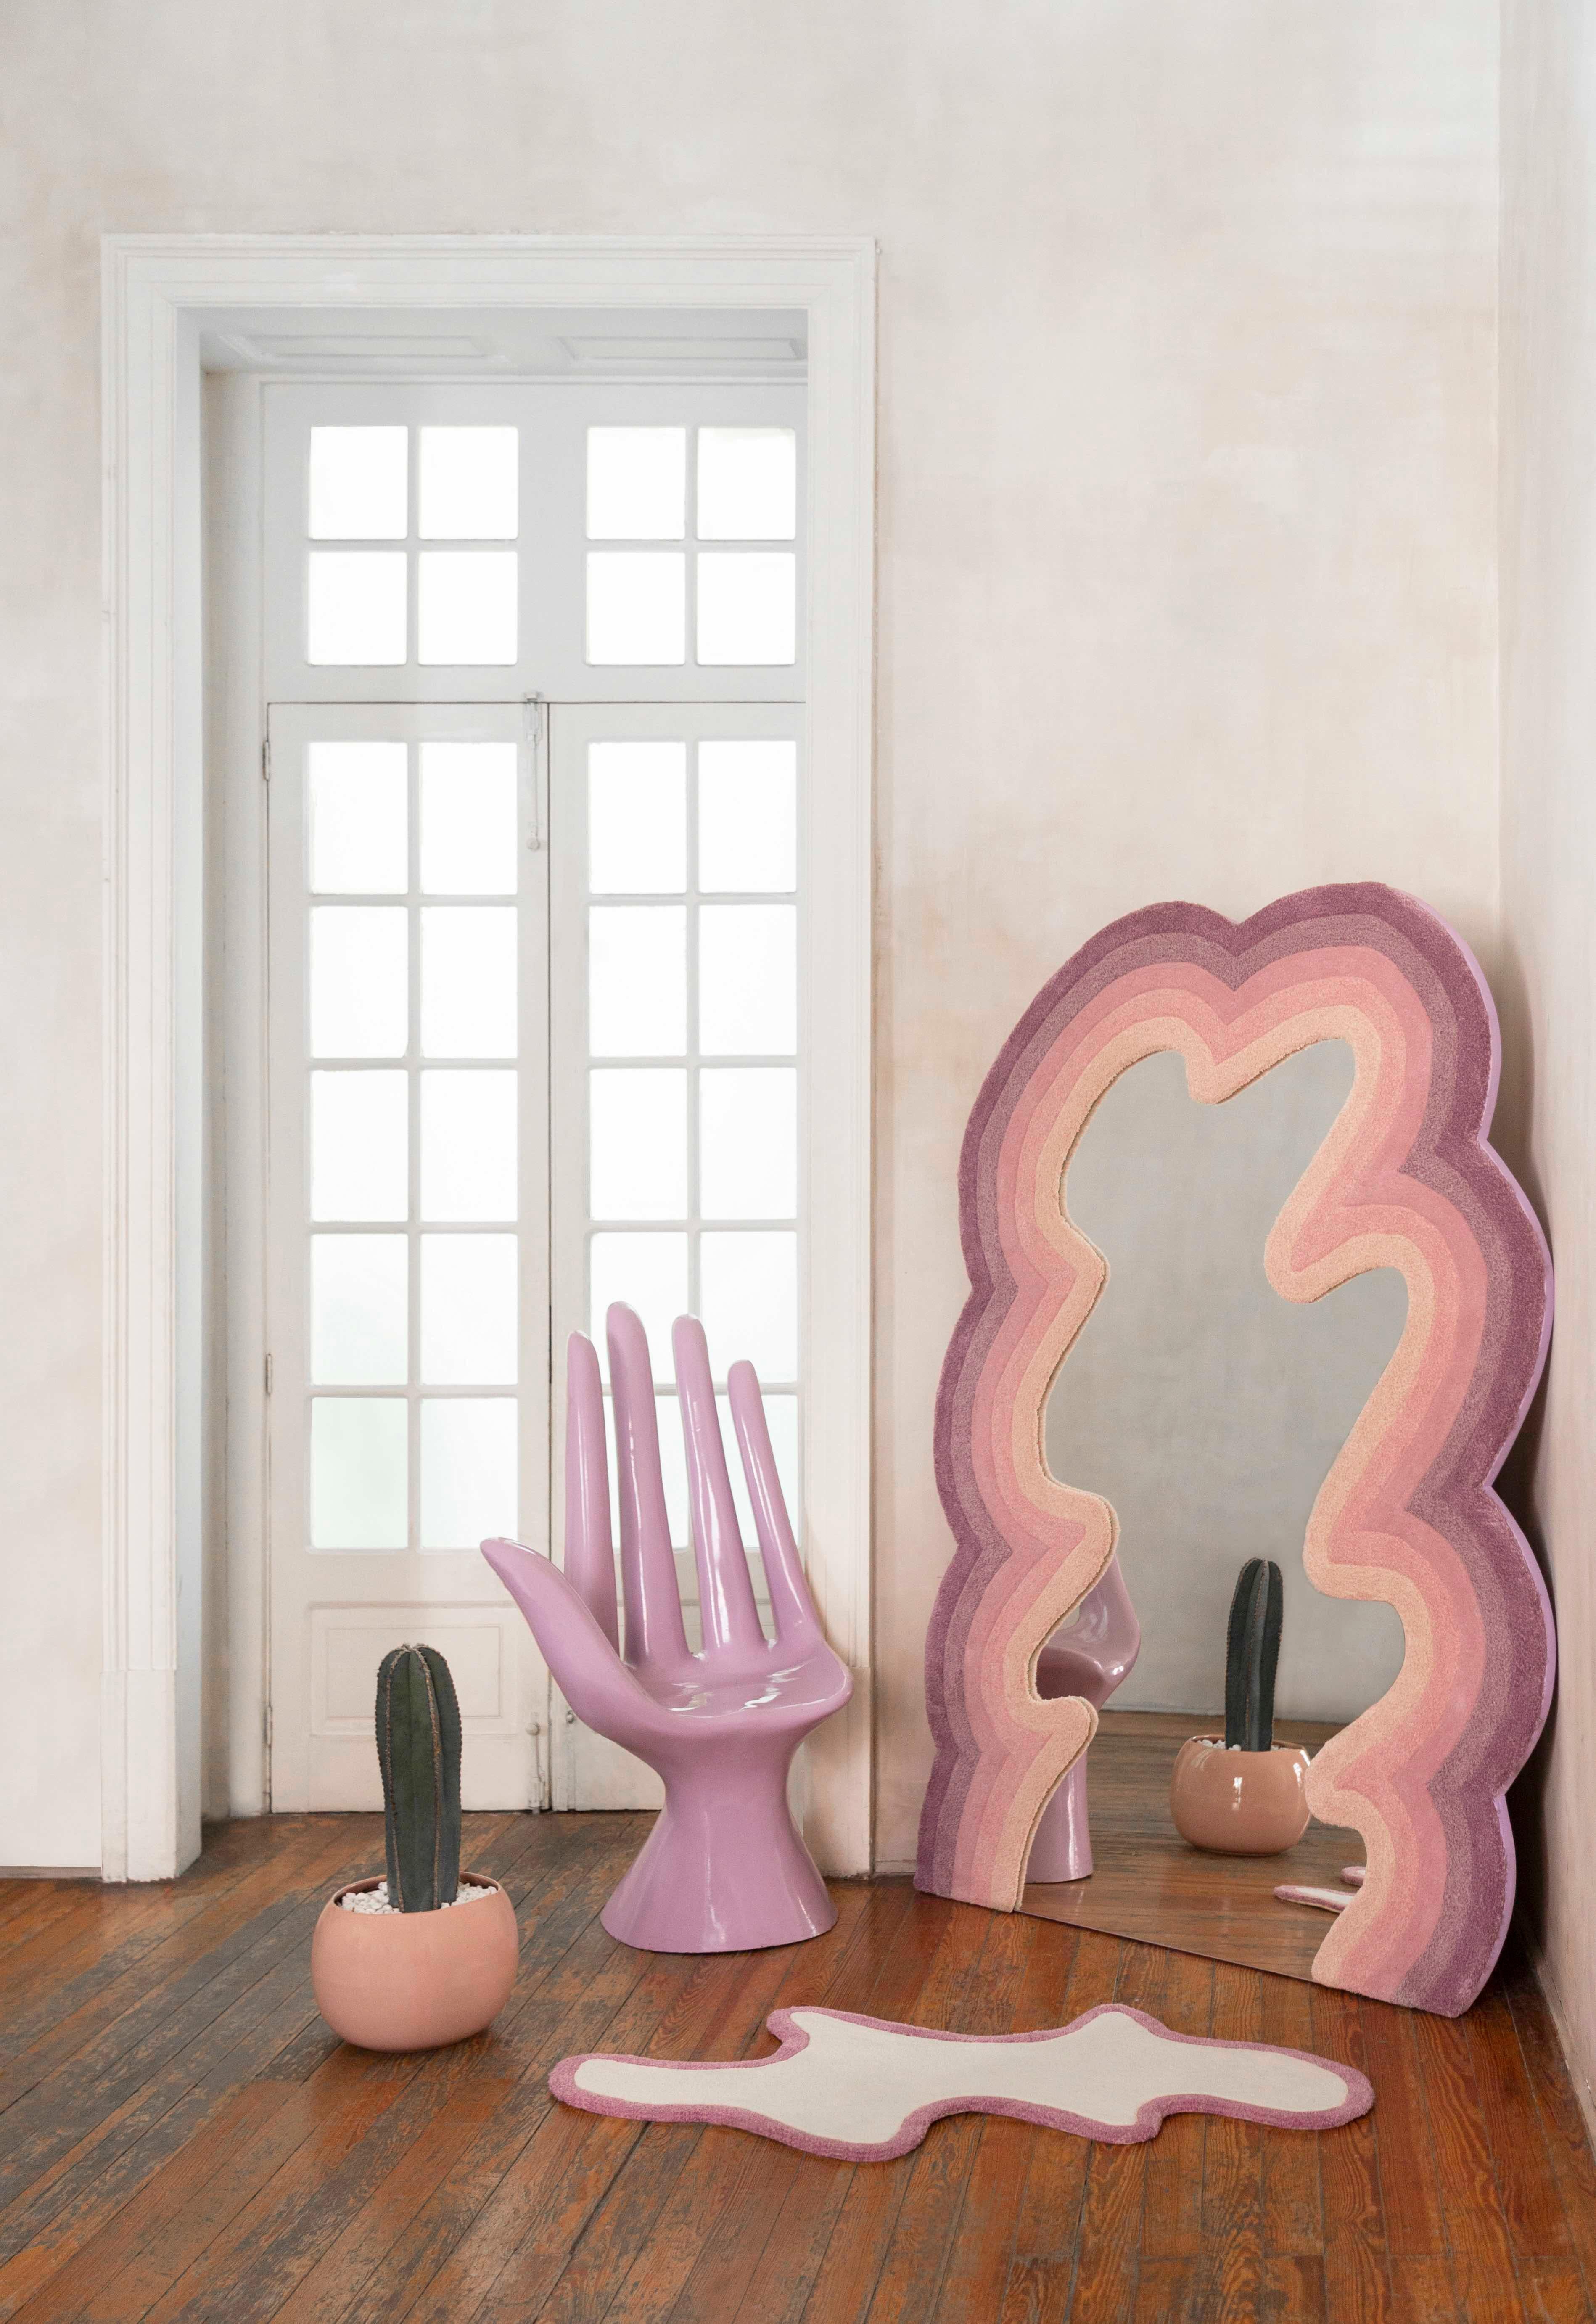 Ensemble de 2 miroirs et tapis Medusa de Brera Studio
Dimensions : 
Miroir encadré dans un tapis : H 190 x L 150 cm.
Tapis en laine : L 120 x L 60 cm.
MATERIAL : 100% laine, miroir.

Dimensions mesurées à partir des points extrêmes. Veuillez nous